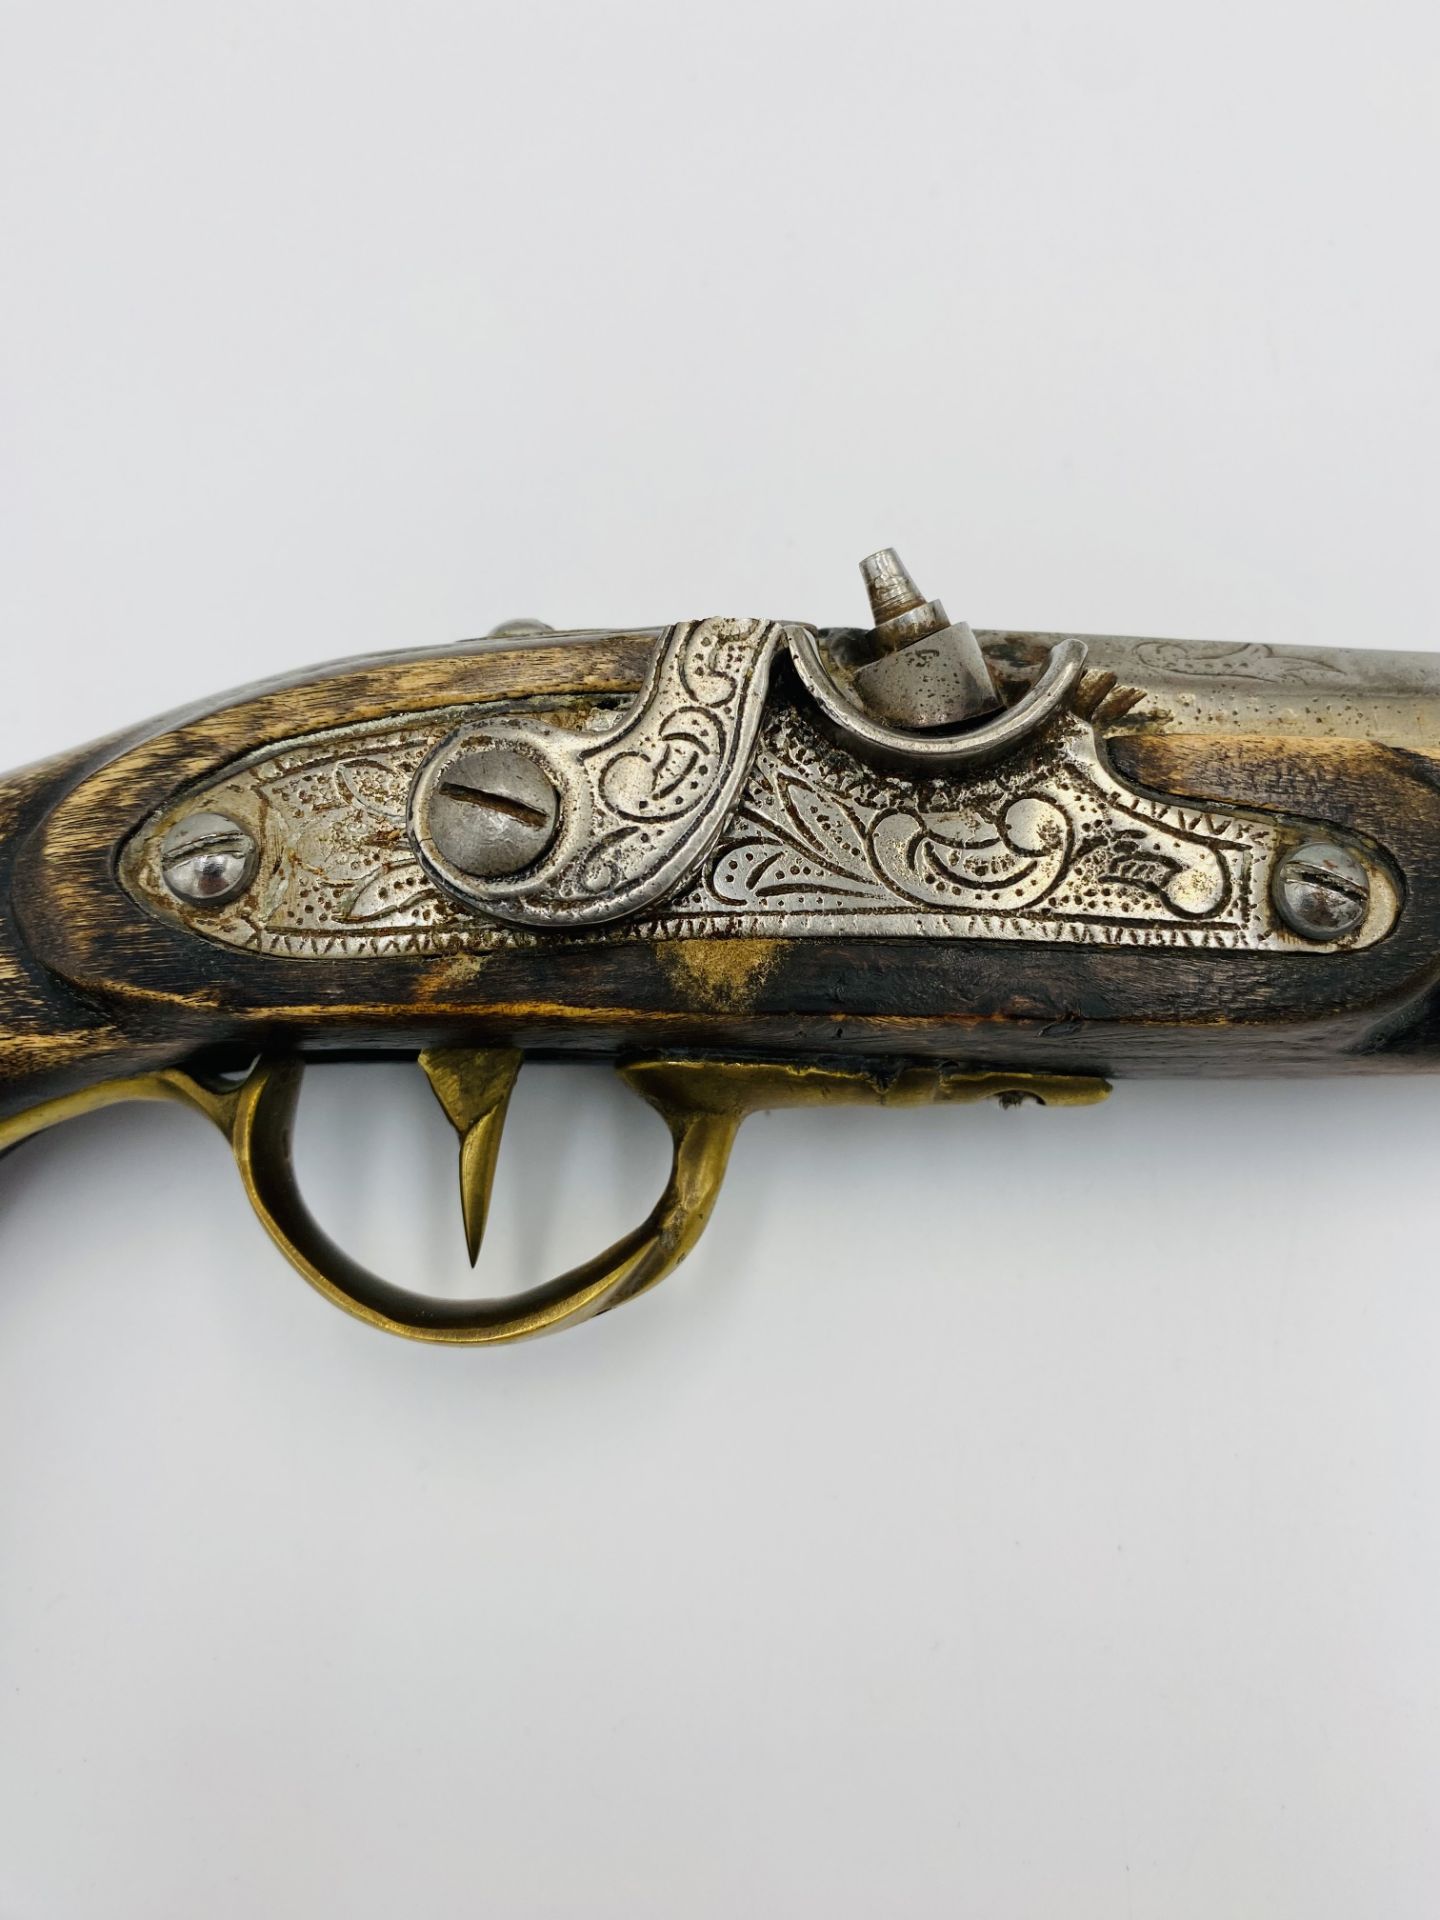 19th century flintlock pistol - Bild 3 aus 6